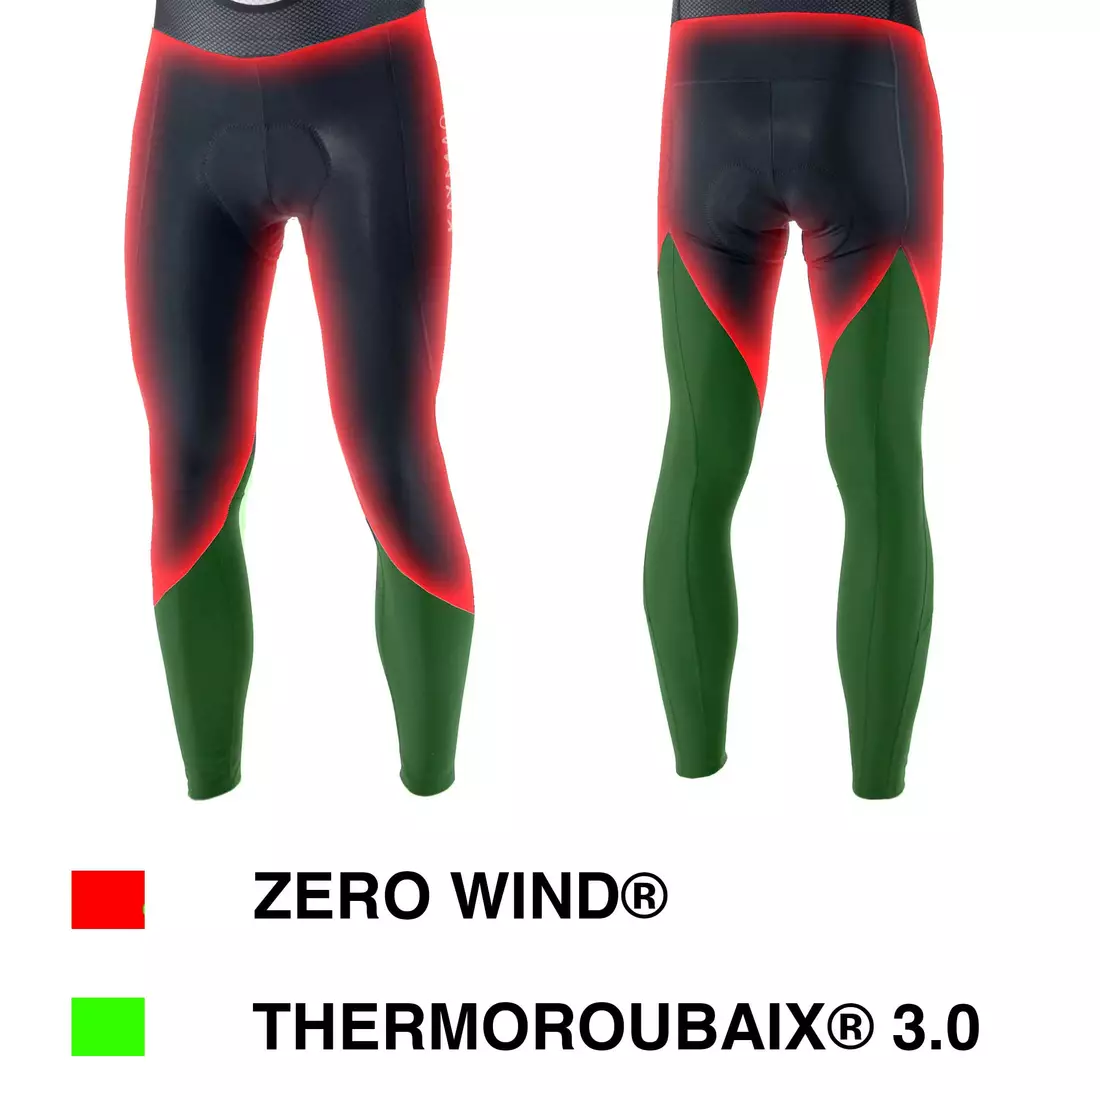 KAYMAQ ELWIN001 zimowe męskie ocieplane spodnie rowerowe na szelkach, membrana Zero Wind, czarne